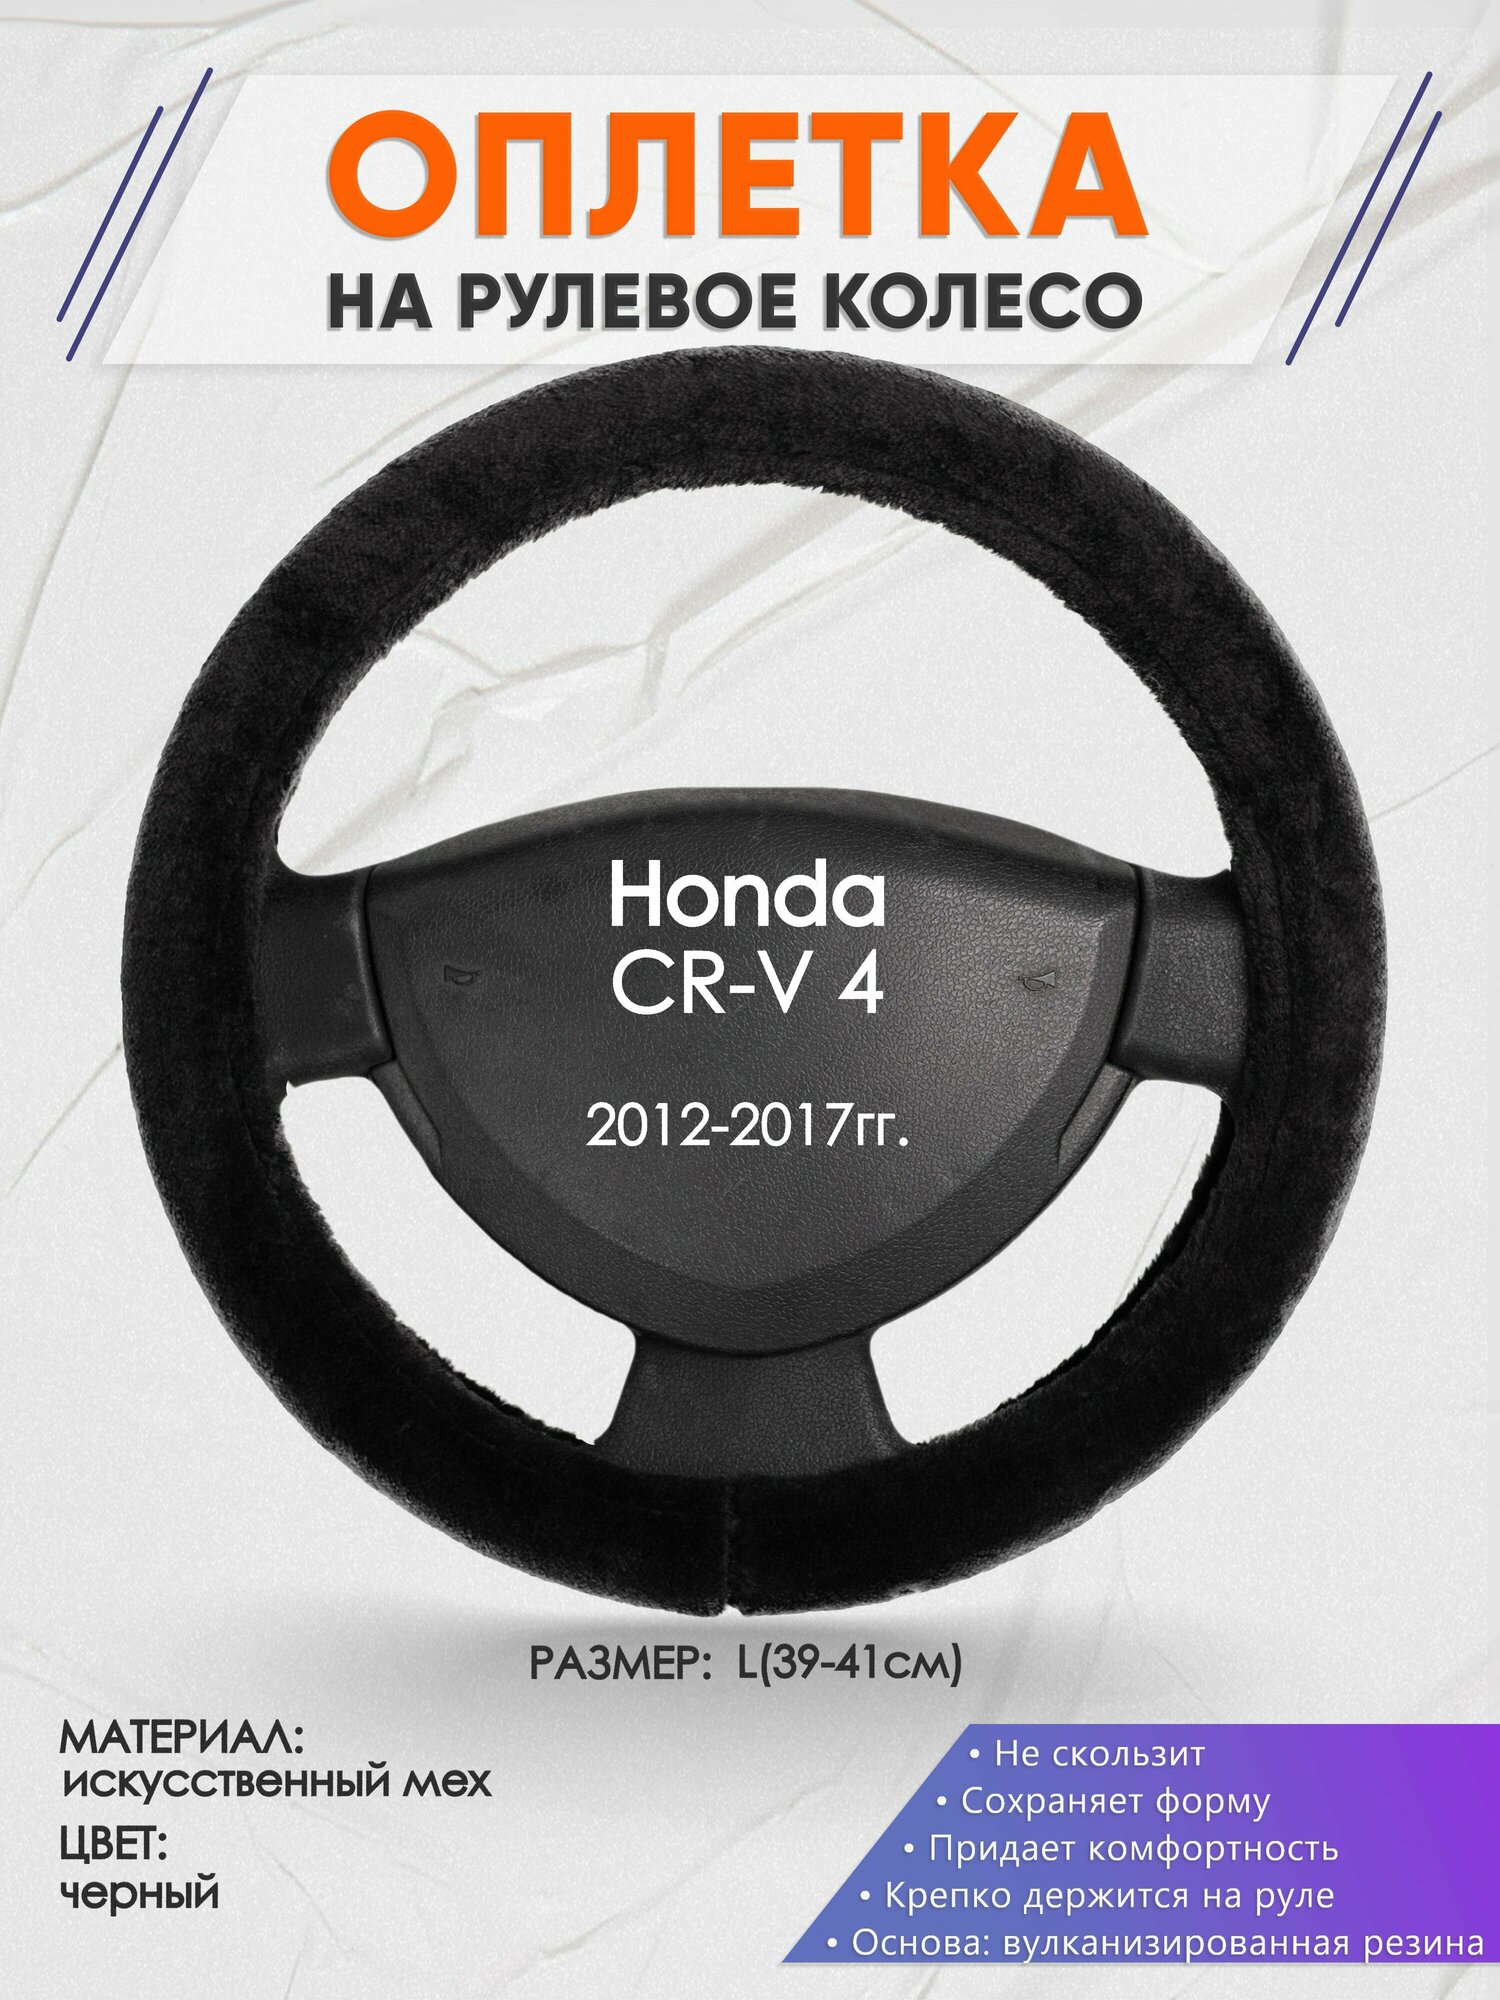 Оплетка на руль для Honda CR-V 4(Хонда срв 4) 2012-2017, L(39-41см), Искусственный мех 45